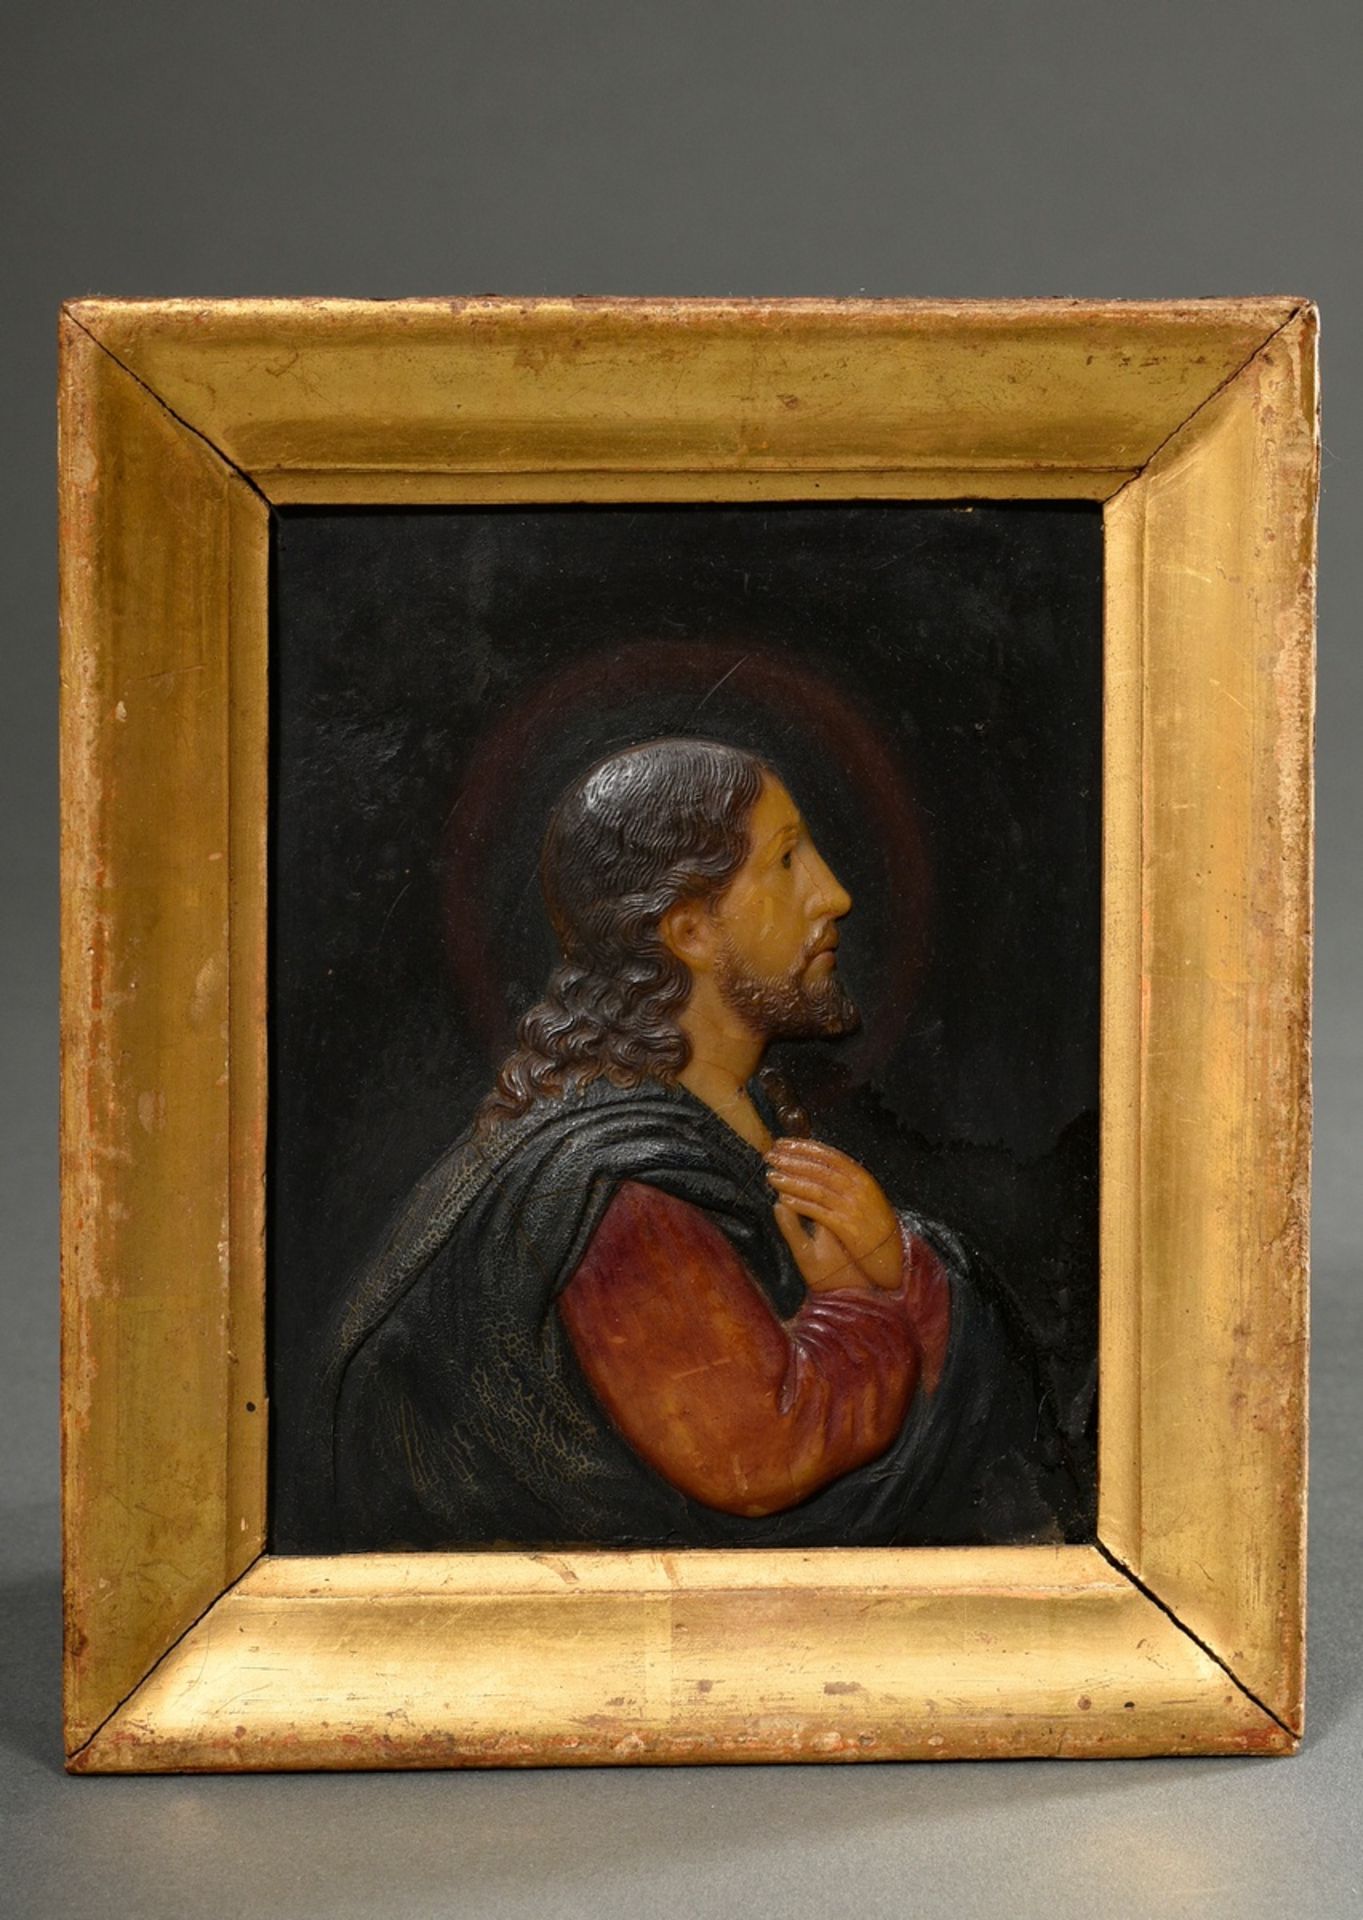 Farbiges Wachsrelief "Christus" in vergoldeter Rahmung, farbig bemalt, 19.Jh., 18,5x16cm, kleine De - Bild 2 aus 5